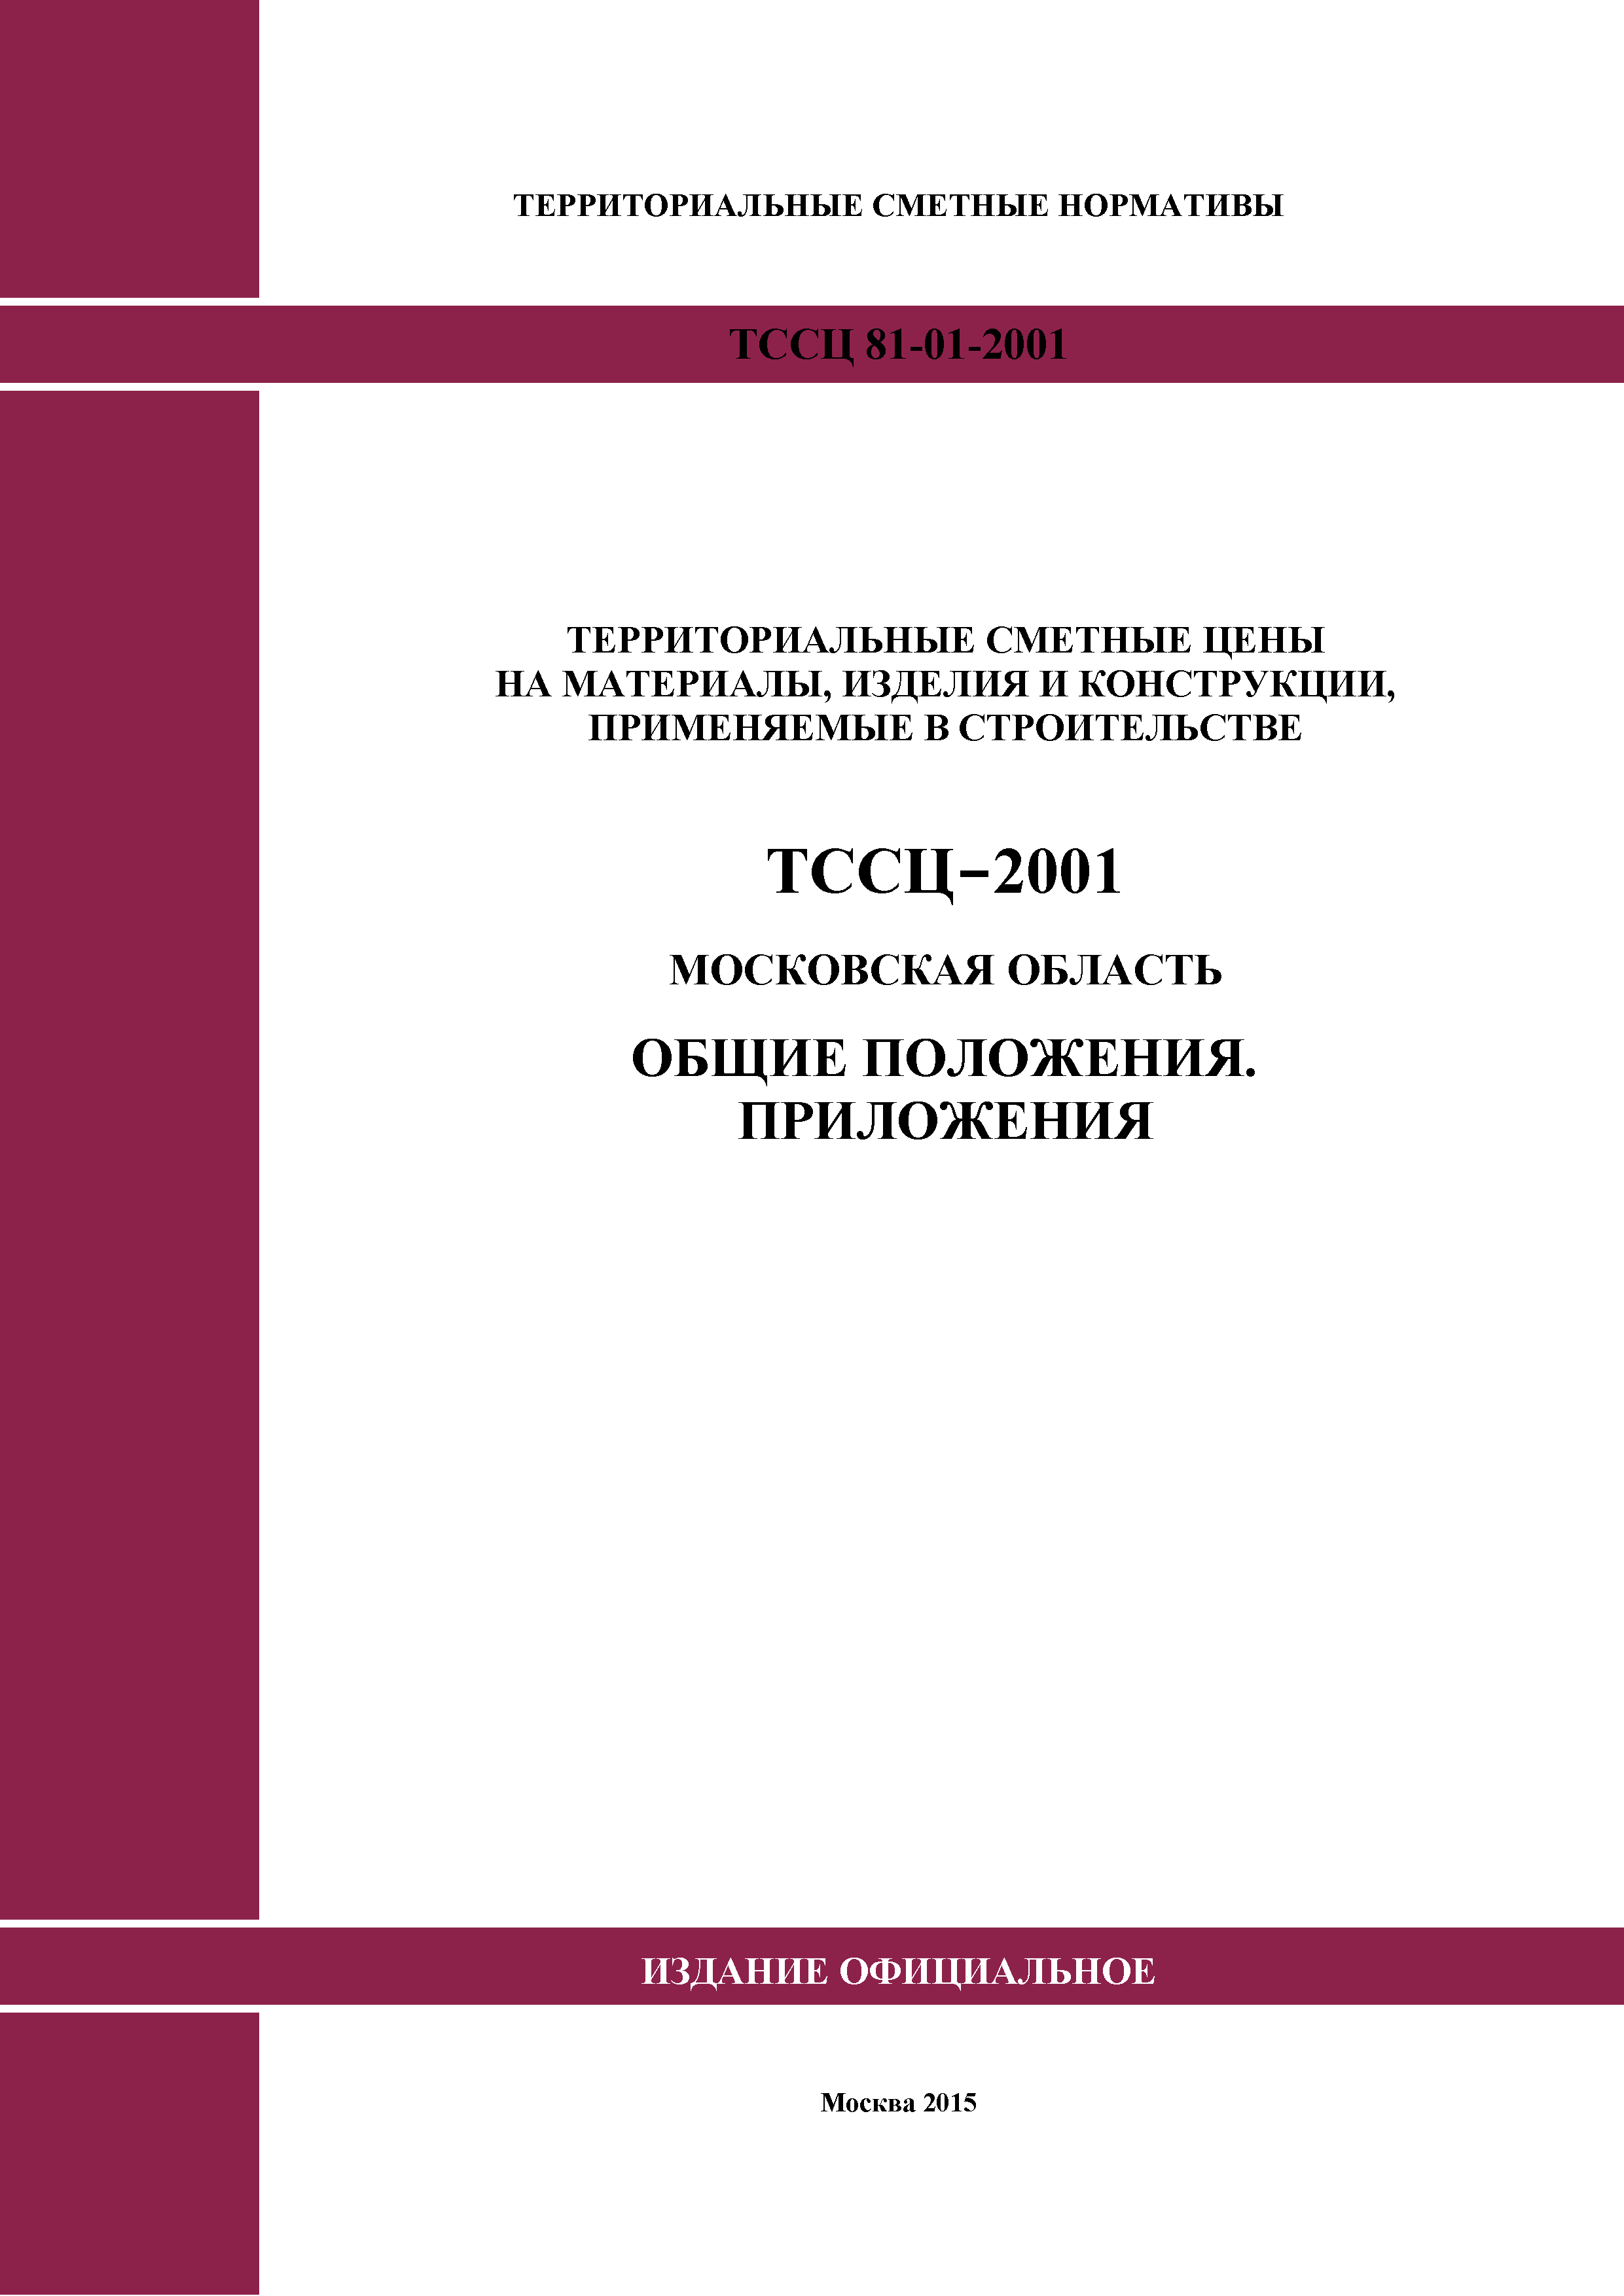 ТССЦ 01-2001 Московская область